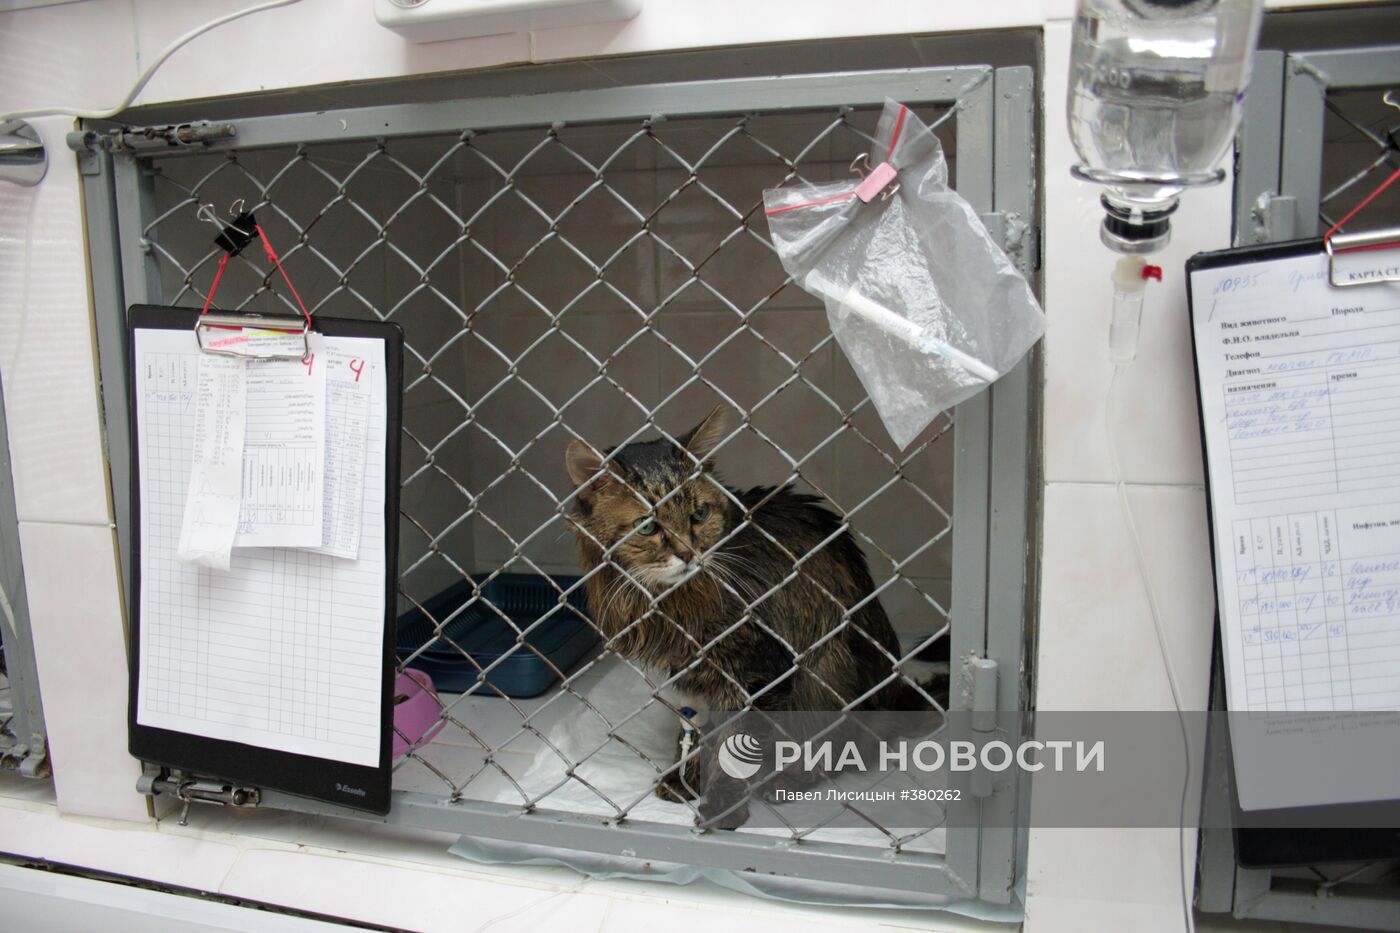 Работа ветеринарной клиники "Ветдоктор" в Екатеринбурге